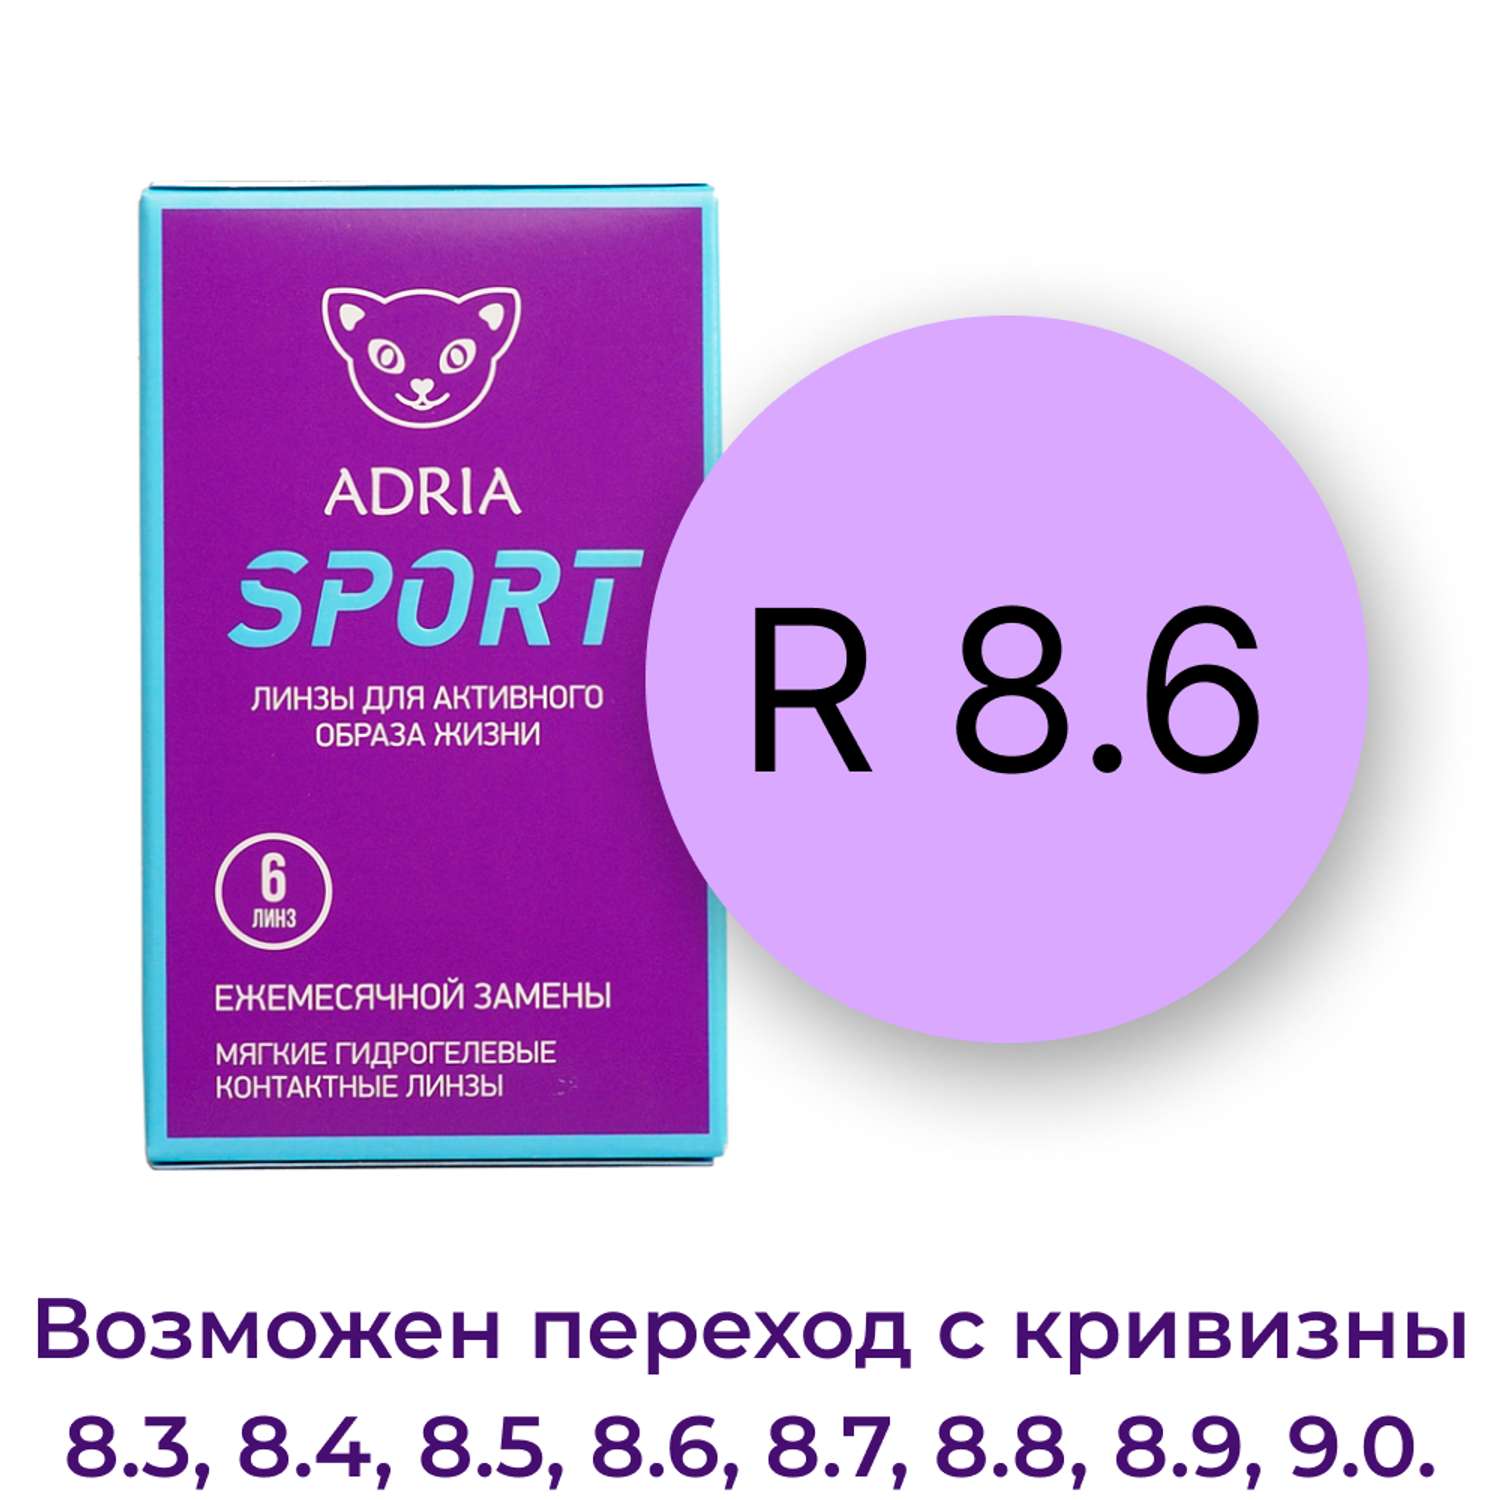 Контактные линзы ADRIA Sport 6 линз R 8.6 -2.50 - фото 3